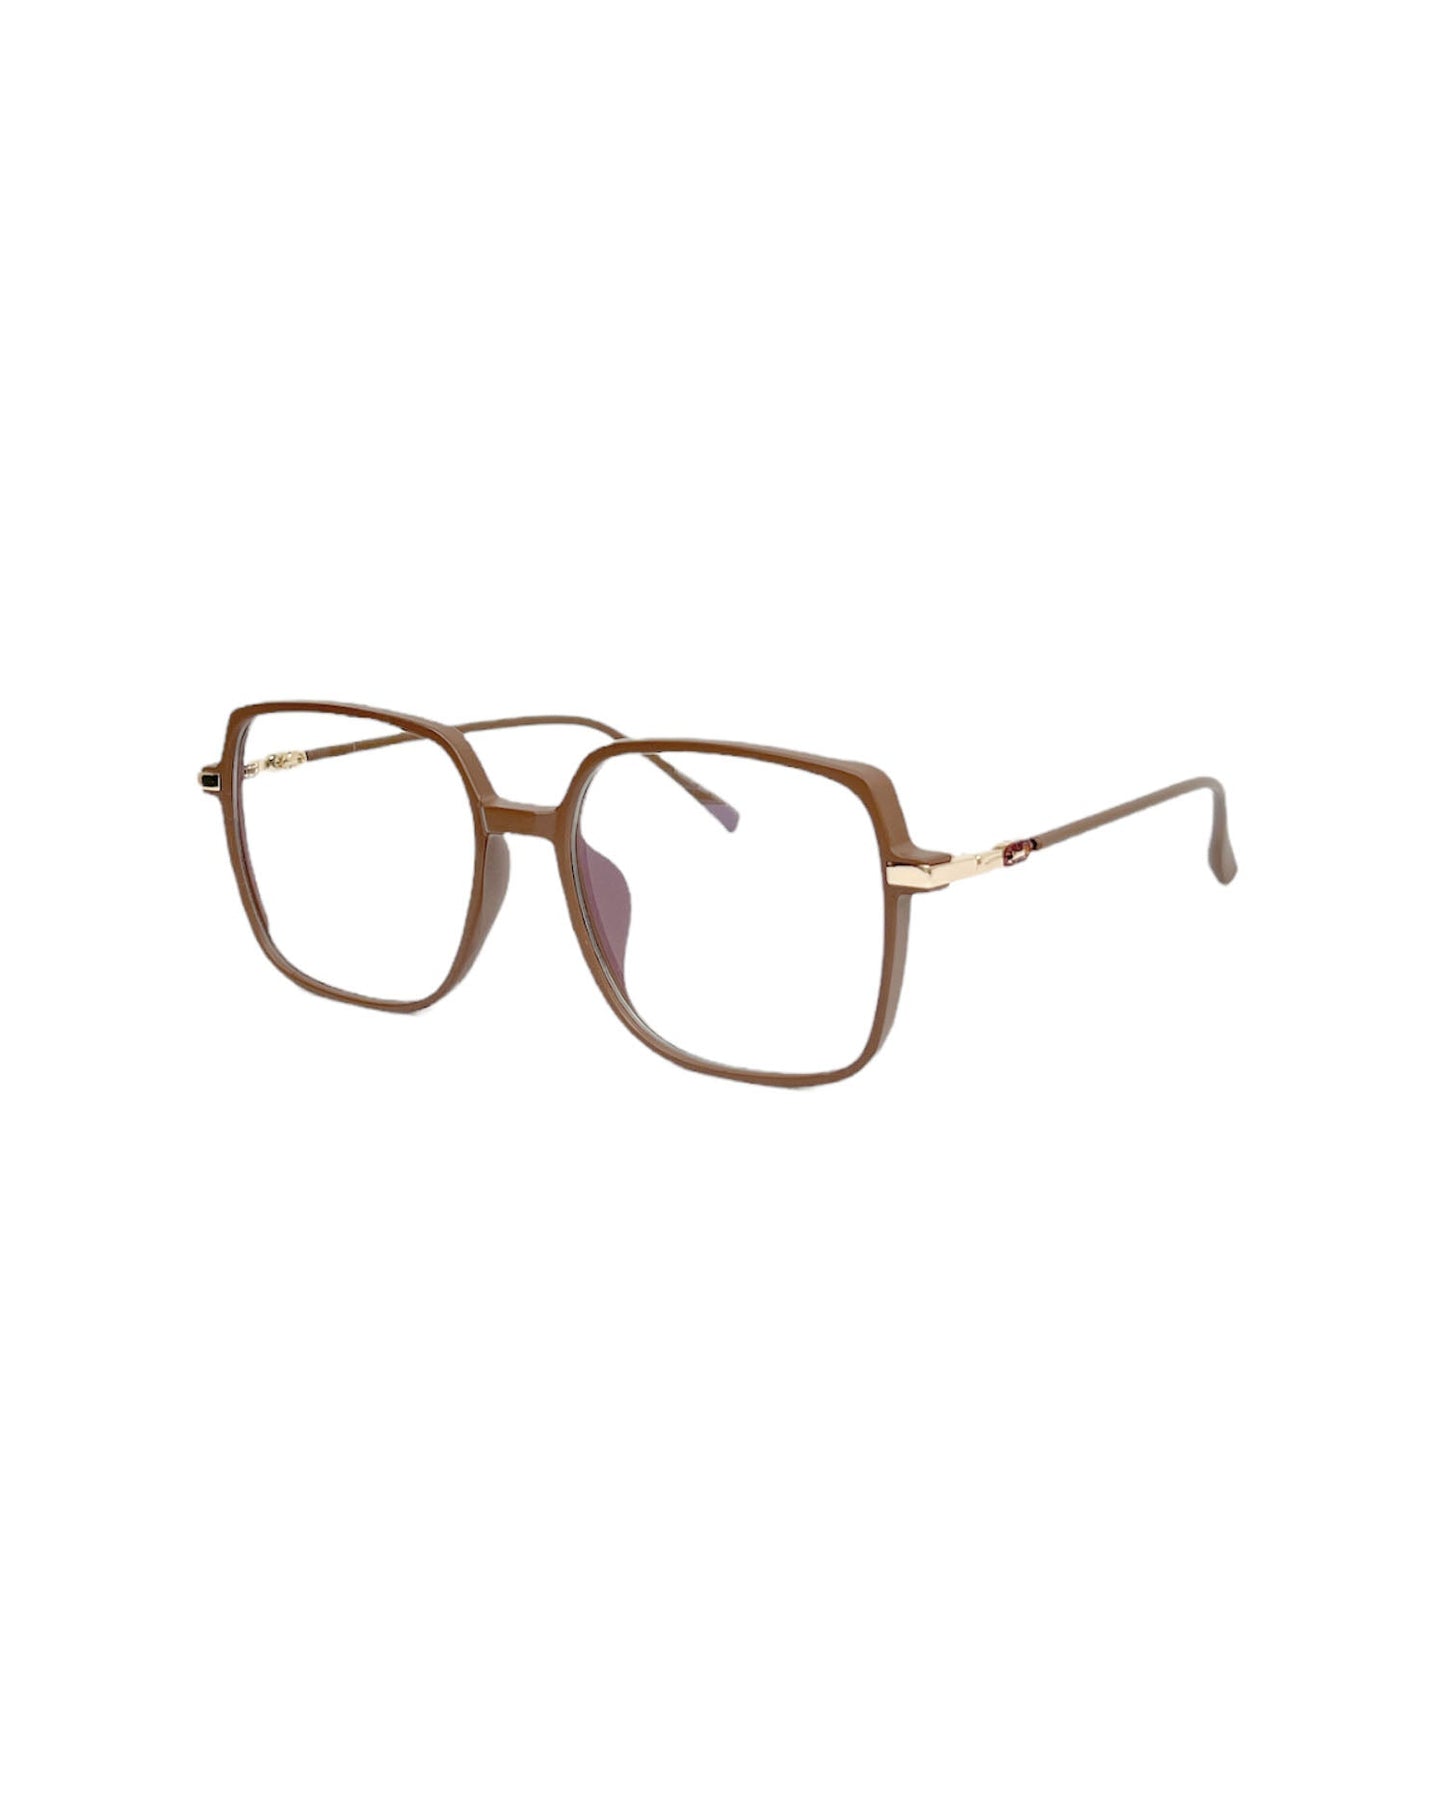 matt brown frame clear lens glasses